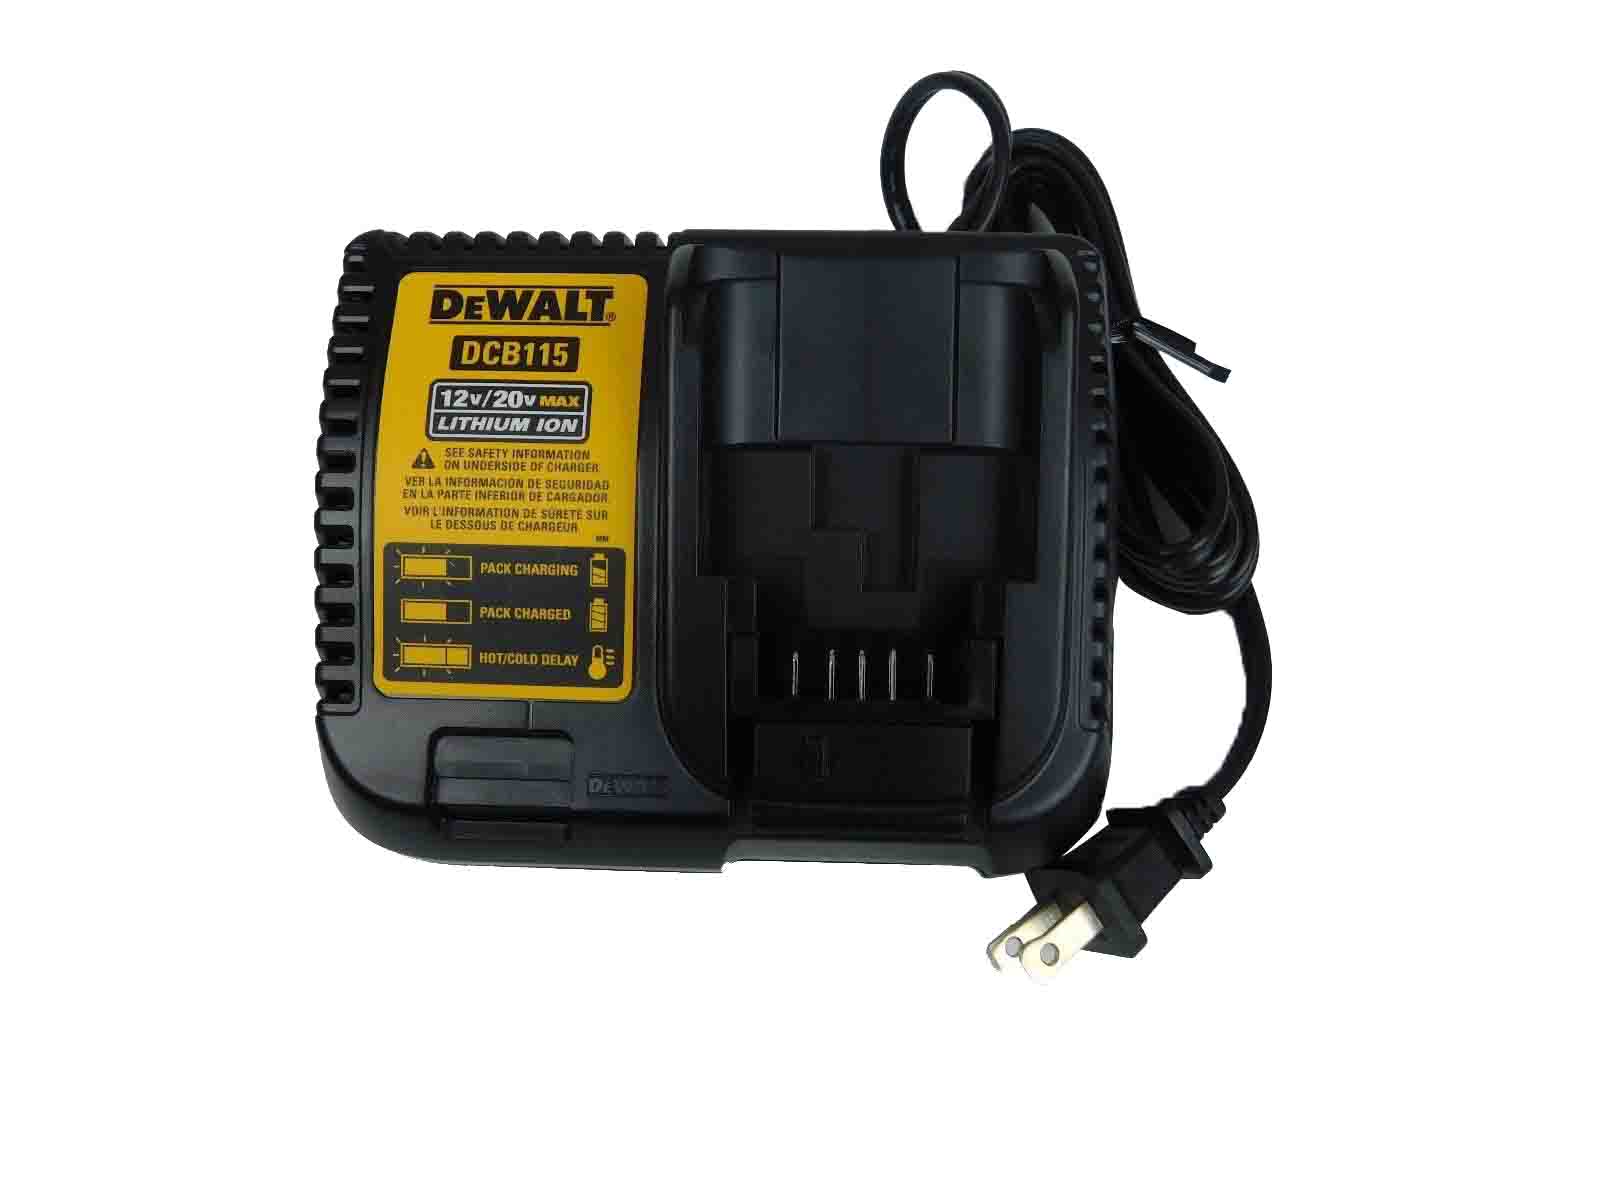 Dewalt-DCB115-10.8V-18V-MAX-Lithium-Ion-Multi-Voltage-Battery-Charger-image-2